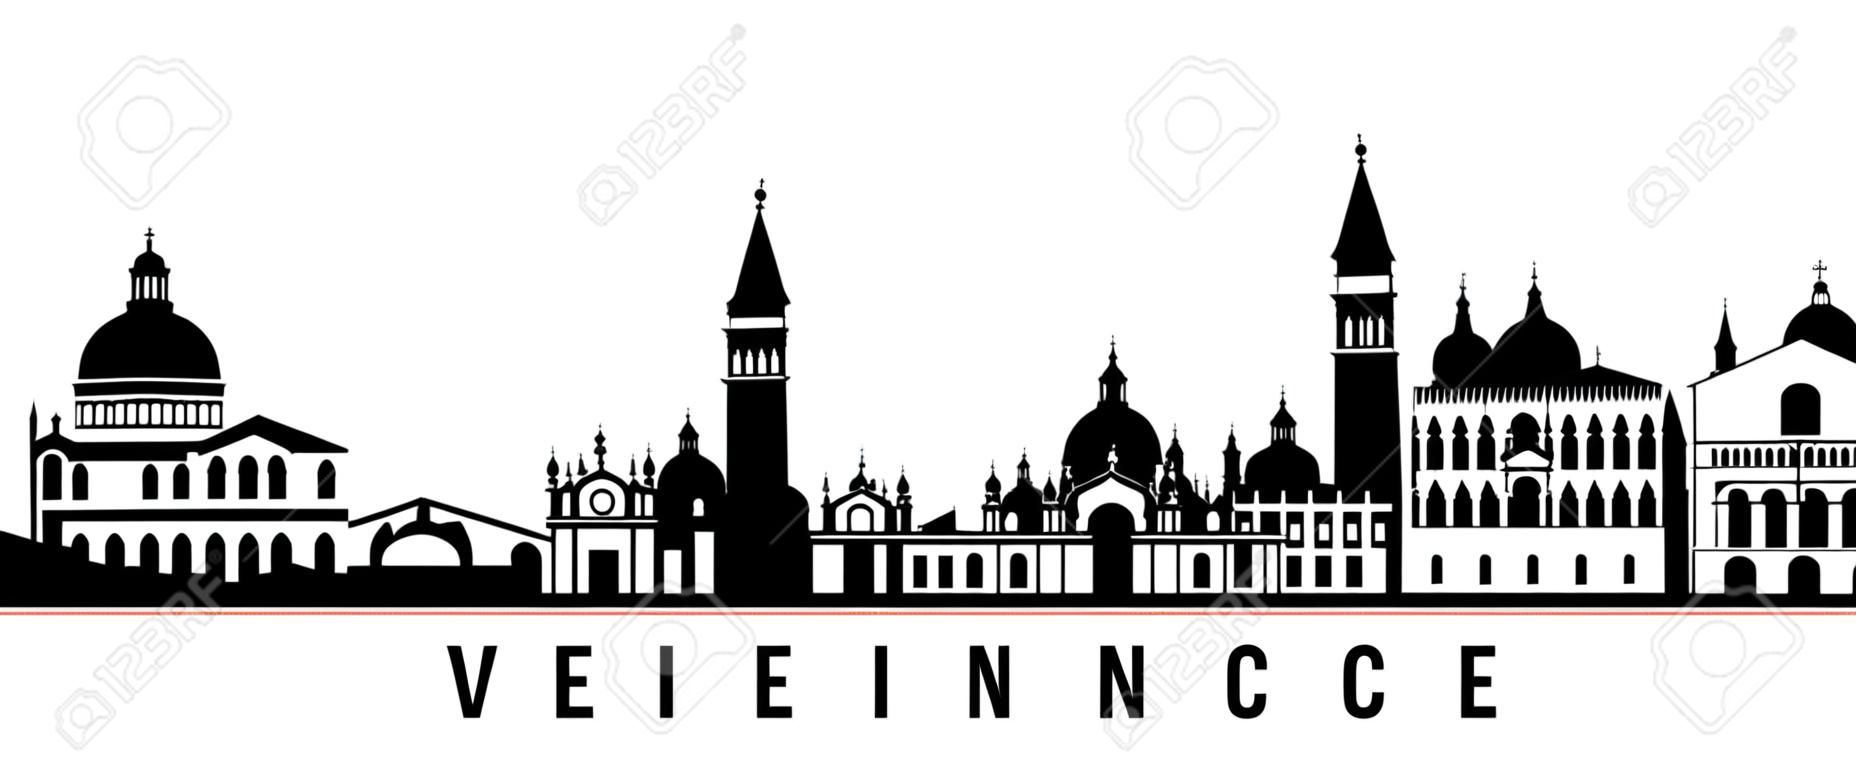 Bandiera orizzontale dello skyline di Venezia. Siluetta in bianco e nero della città di Venezia, Italia. Modello vettoriale per il tuo design.